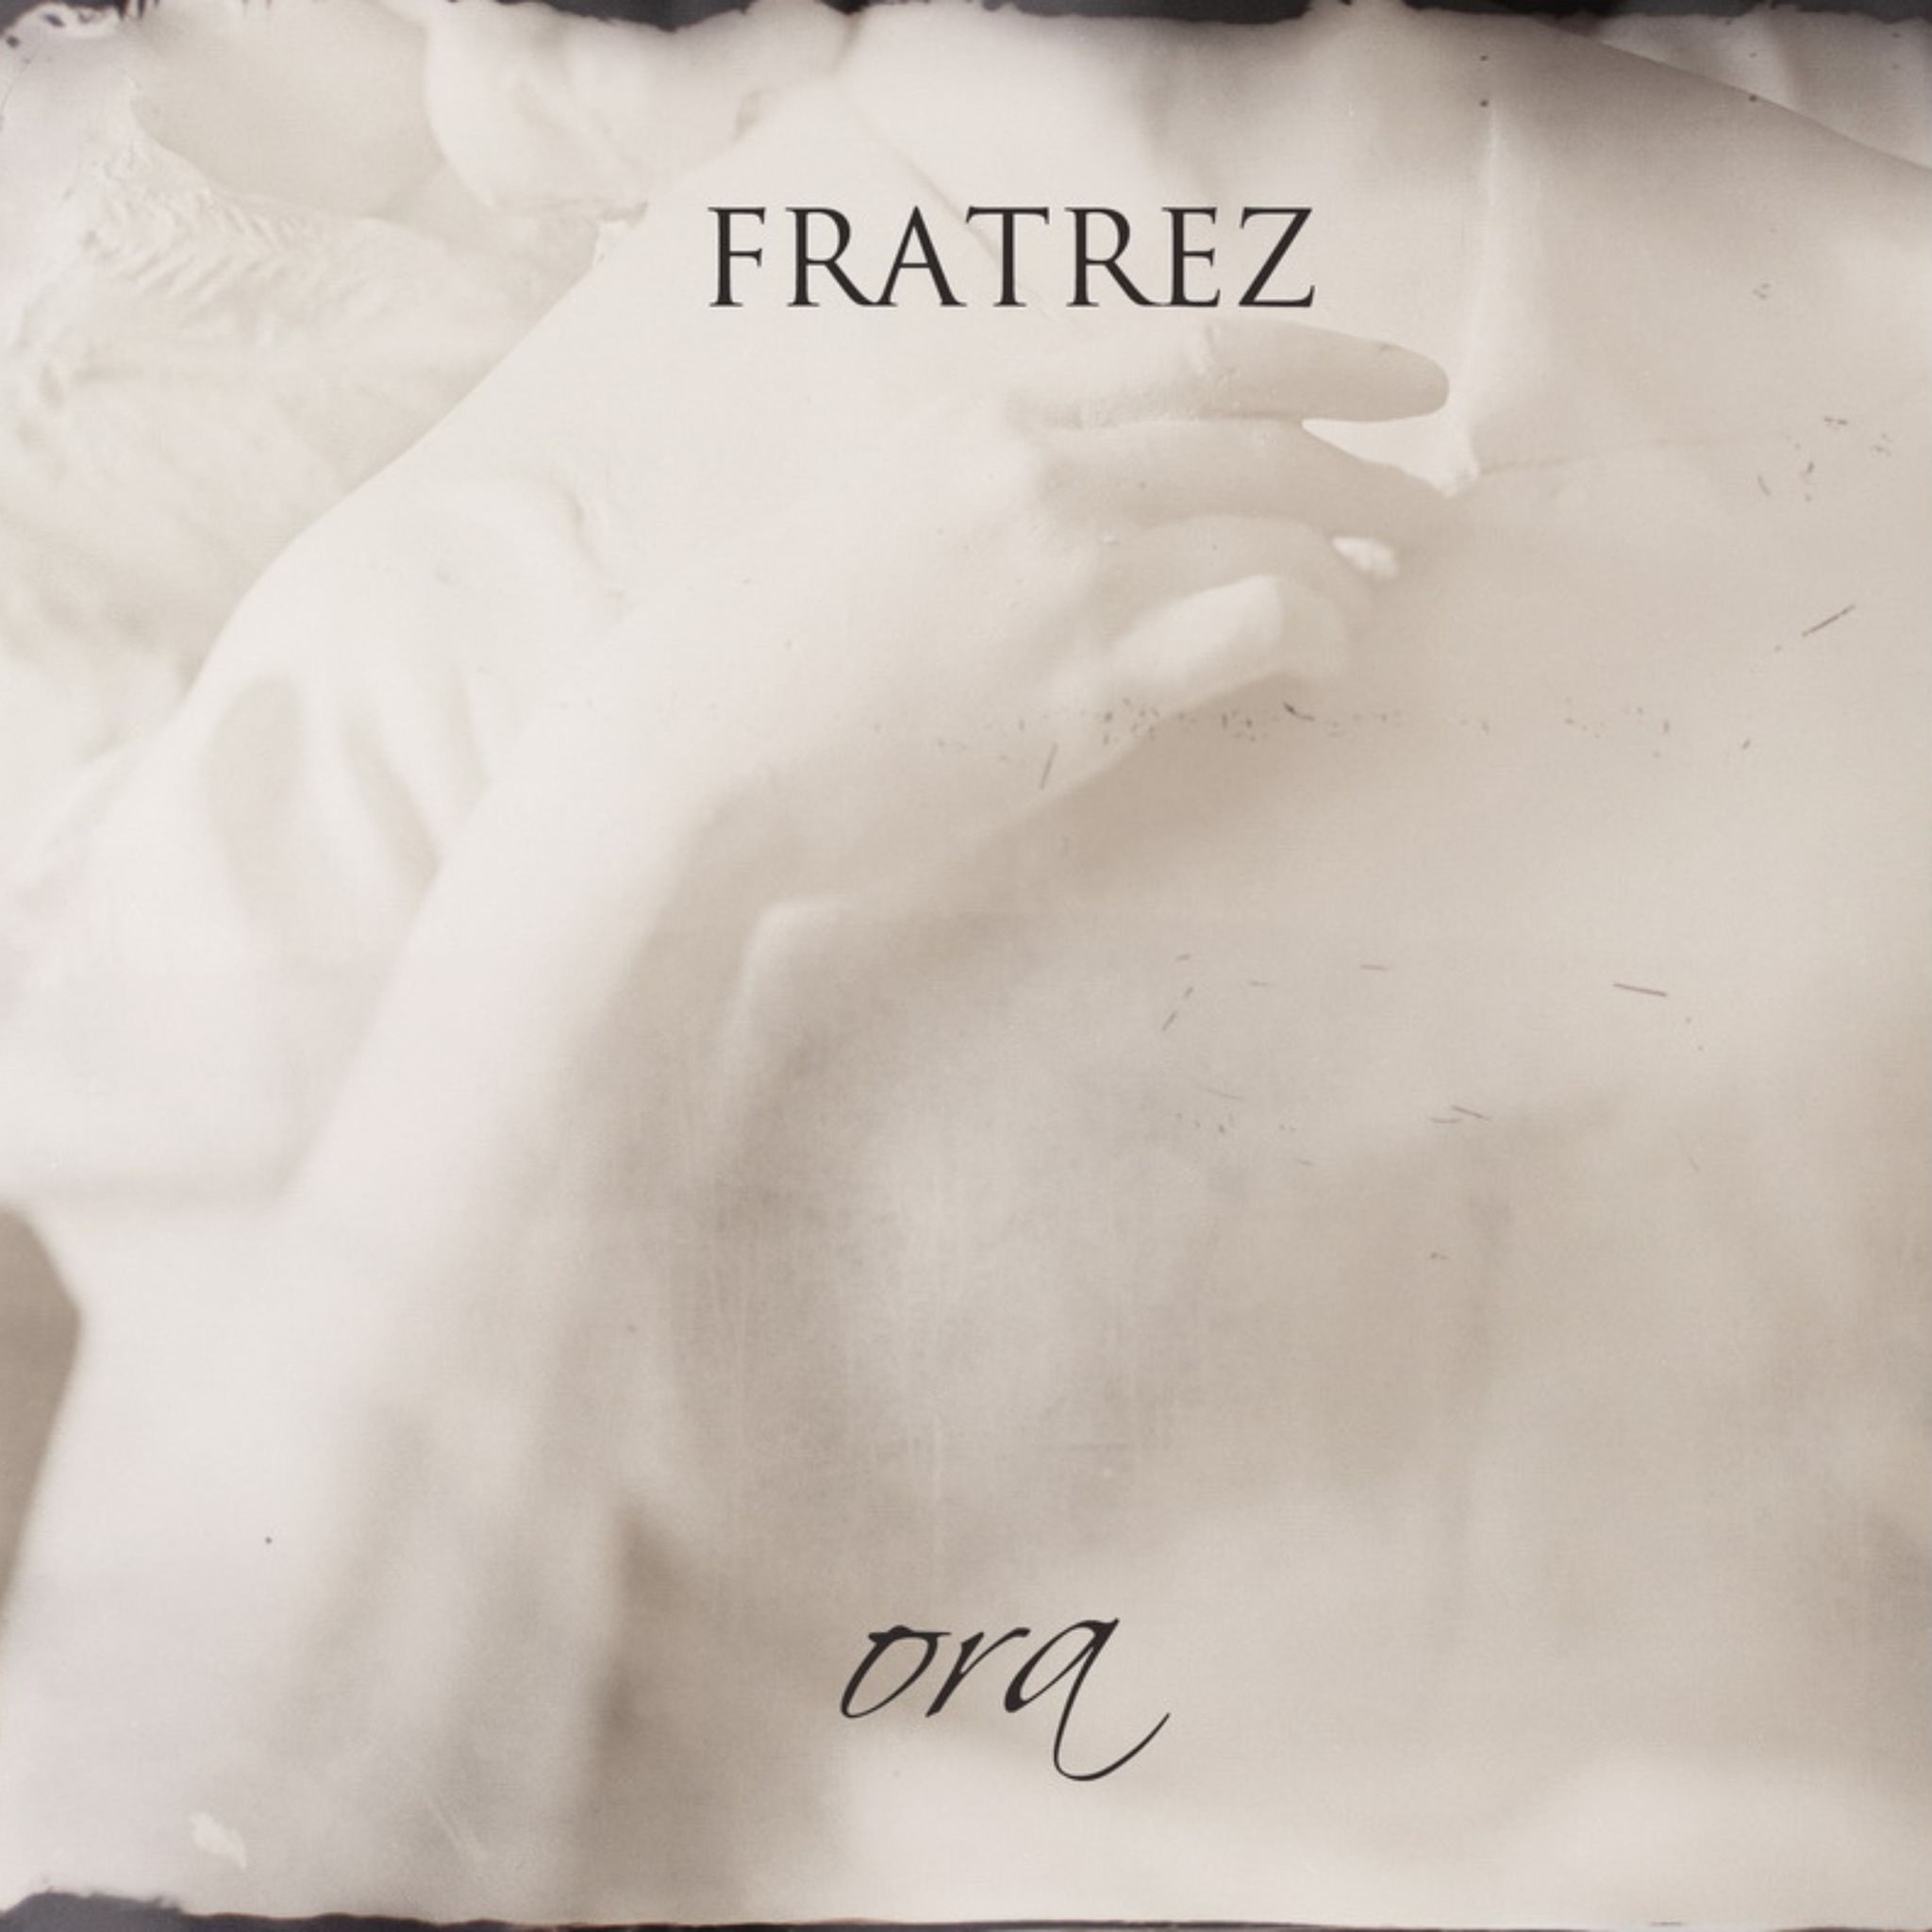 Музыка «вялікай прыгажосці»: на лічбавых пляцоўках з’явіўся культавы нефарматны альбом гурта Fratrez — Ora